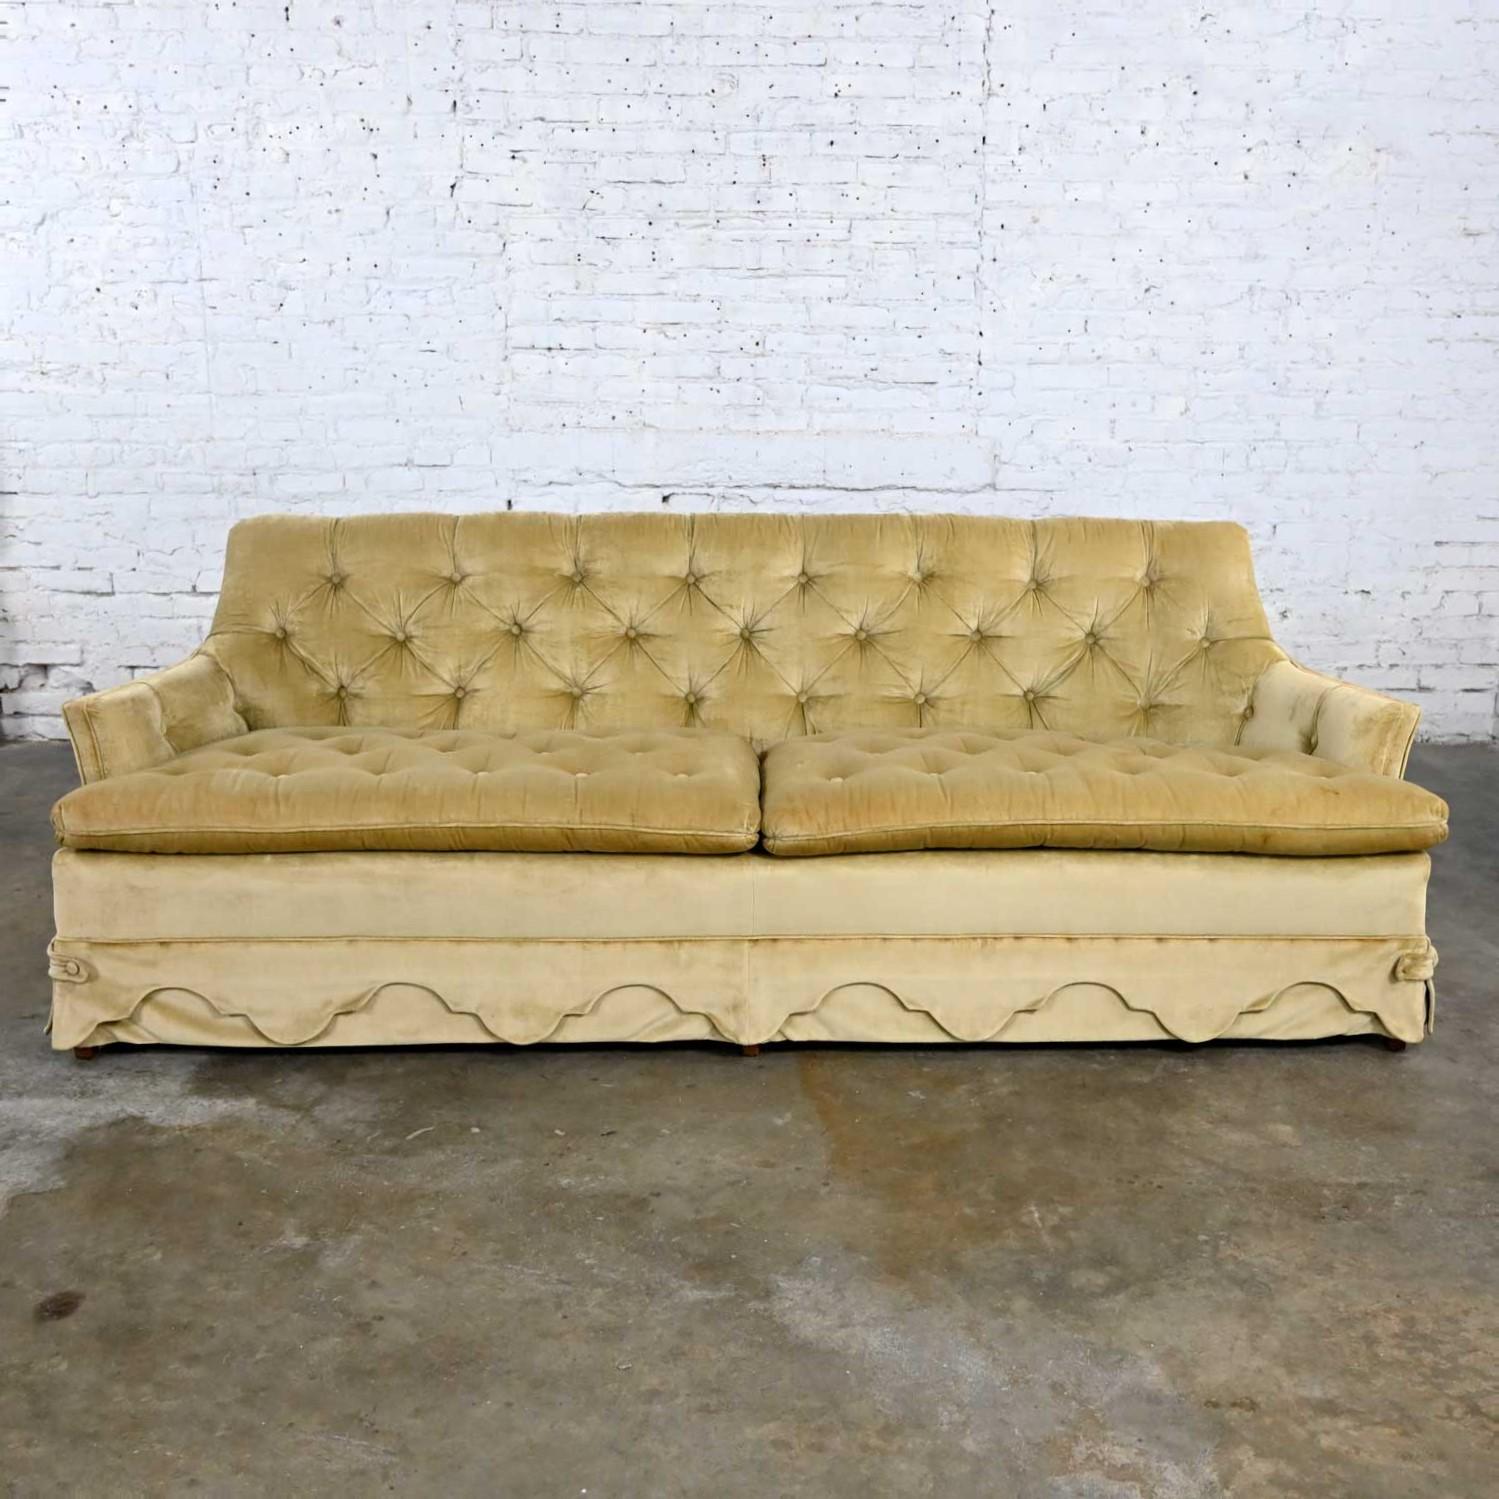 vintage looking sofa